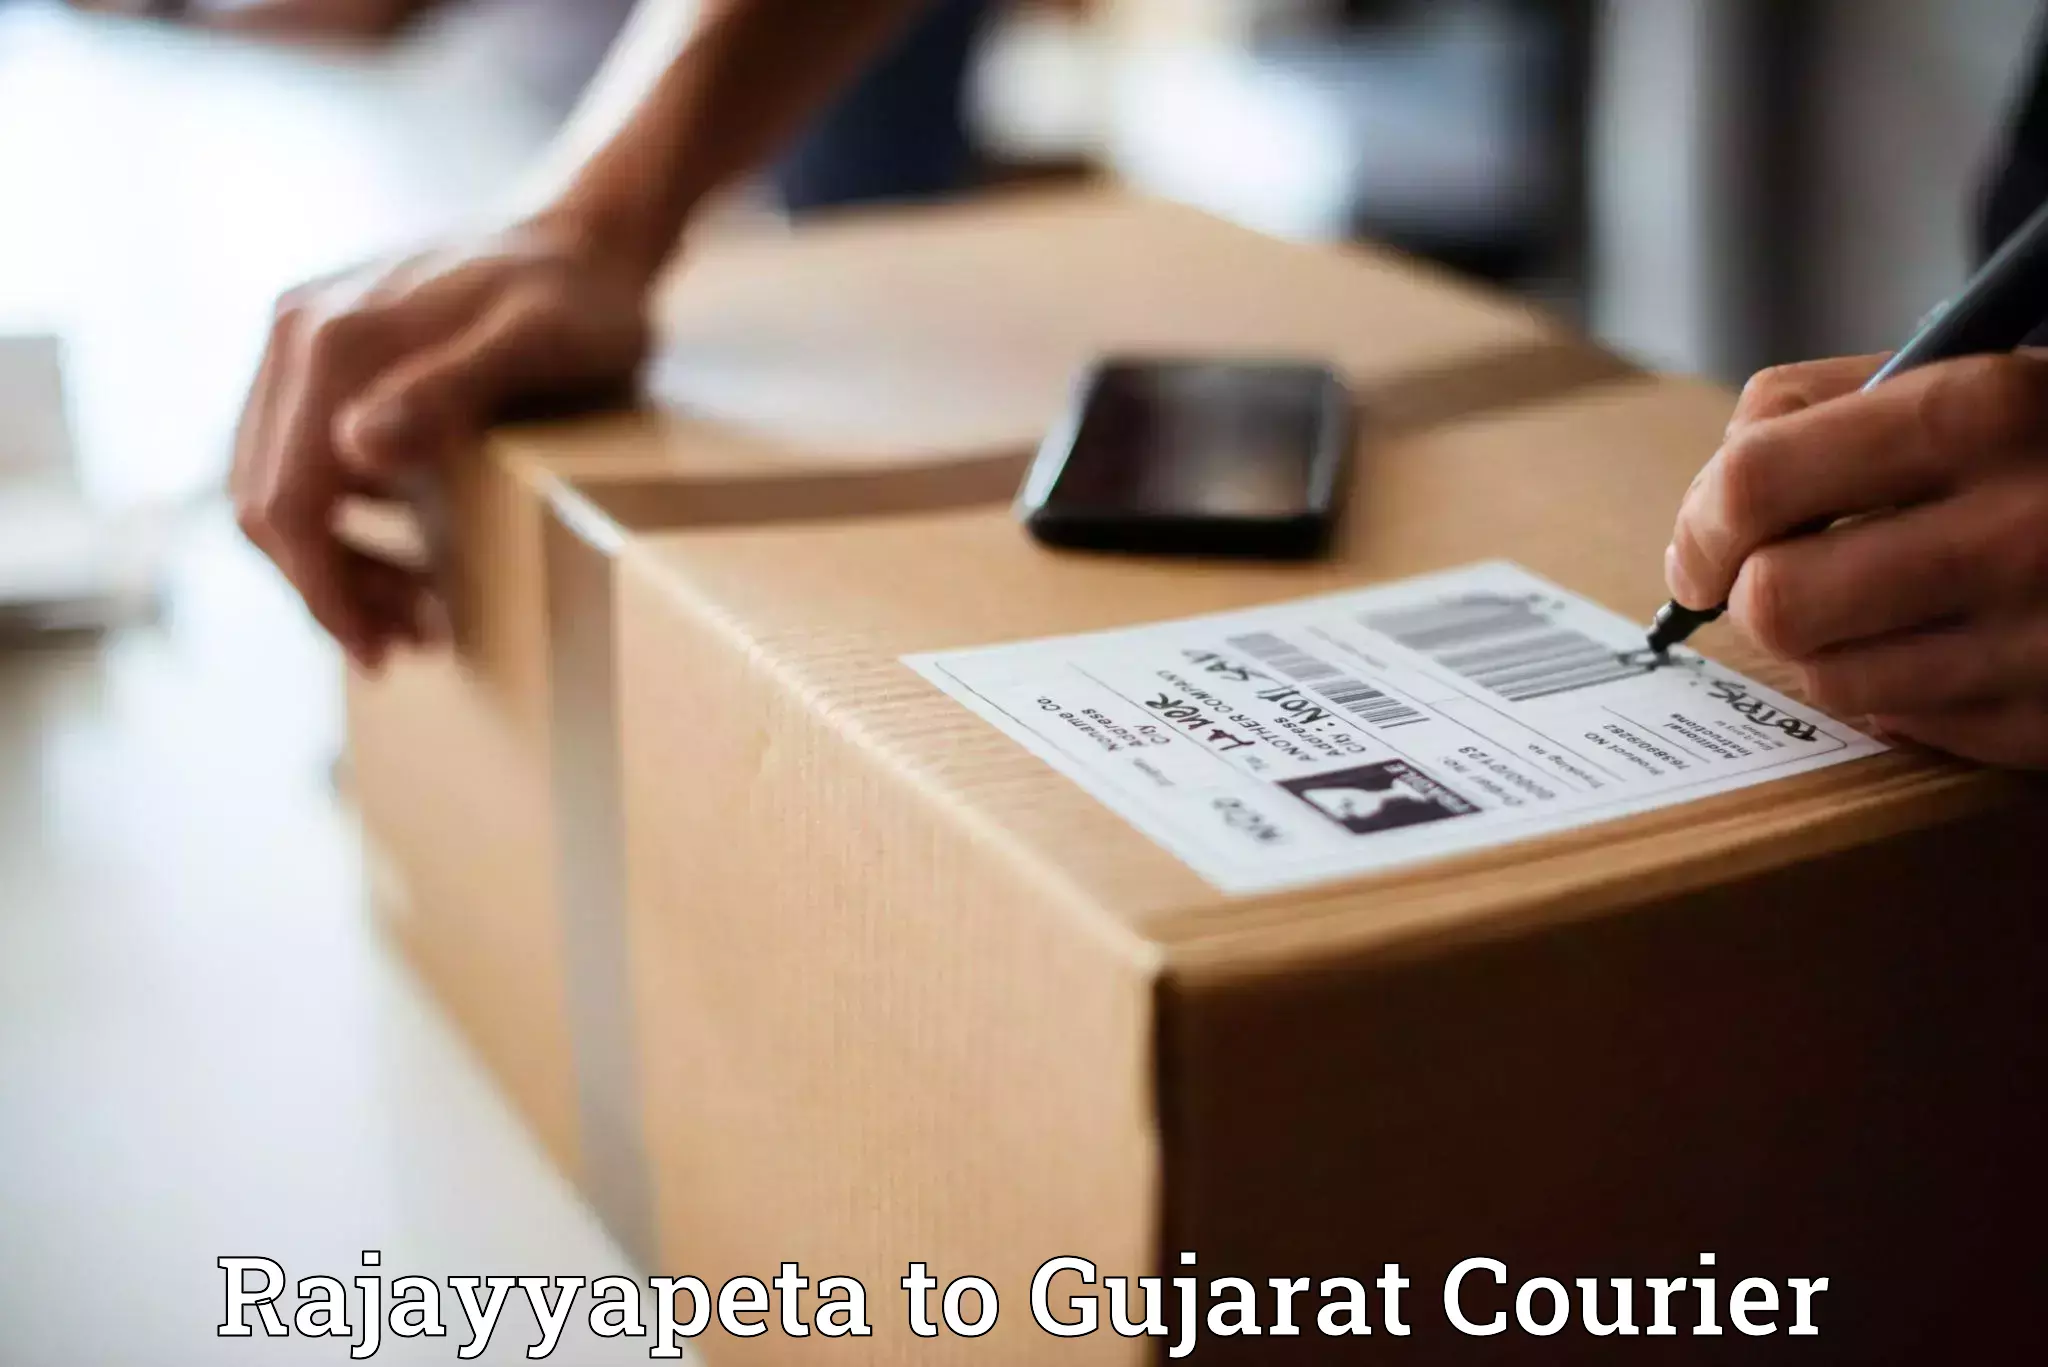 Doorstep delivery service Rajayyapeta to Patdi